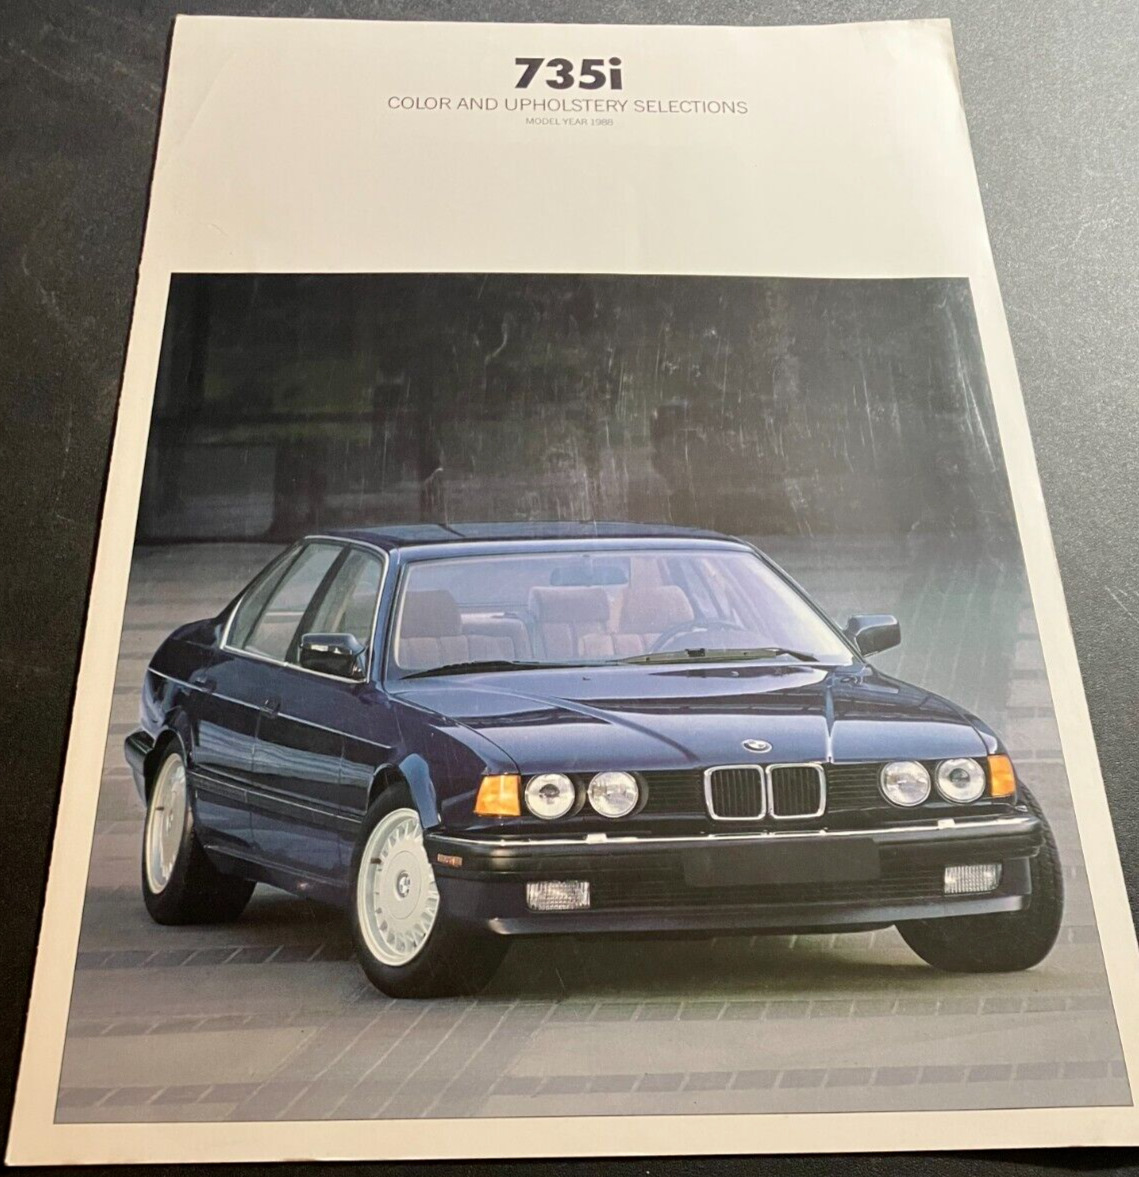 1988 BMW 735i - Vintage Original Foldout Color & Upholstery Sales Brochure Chart